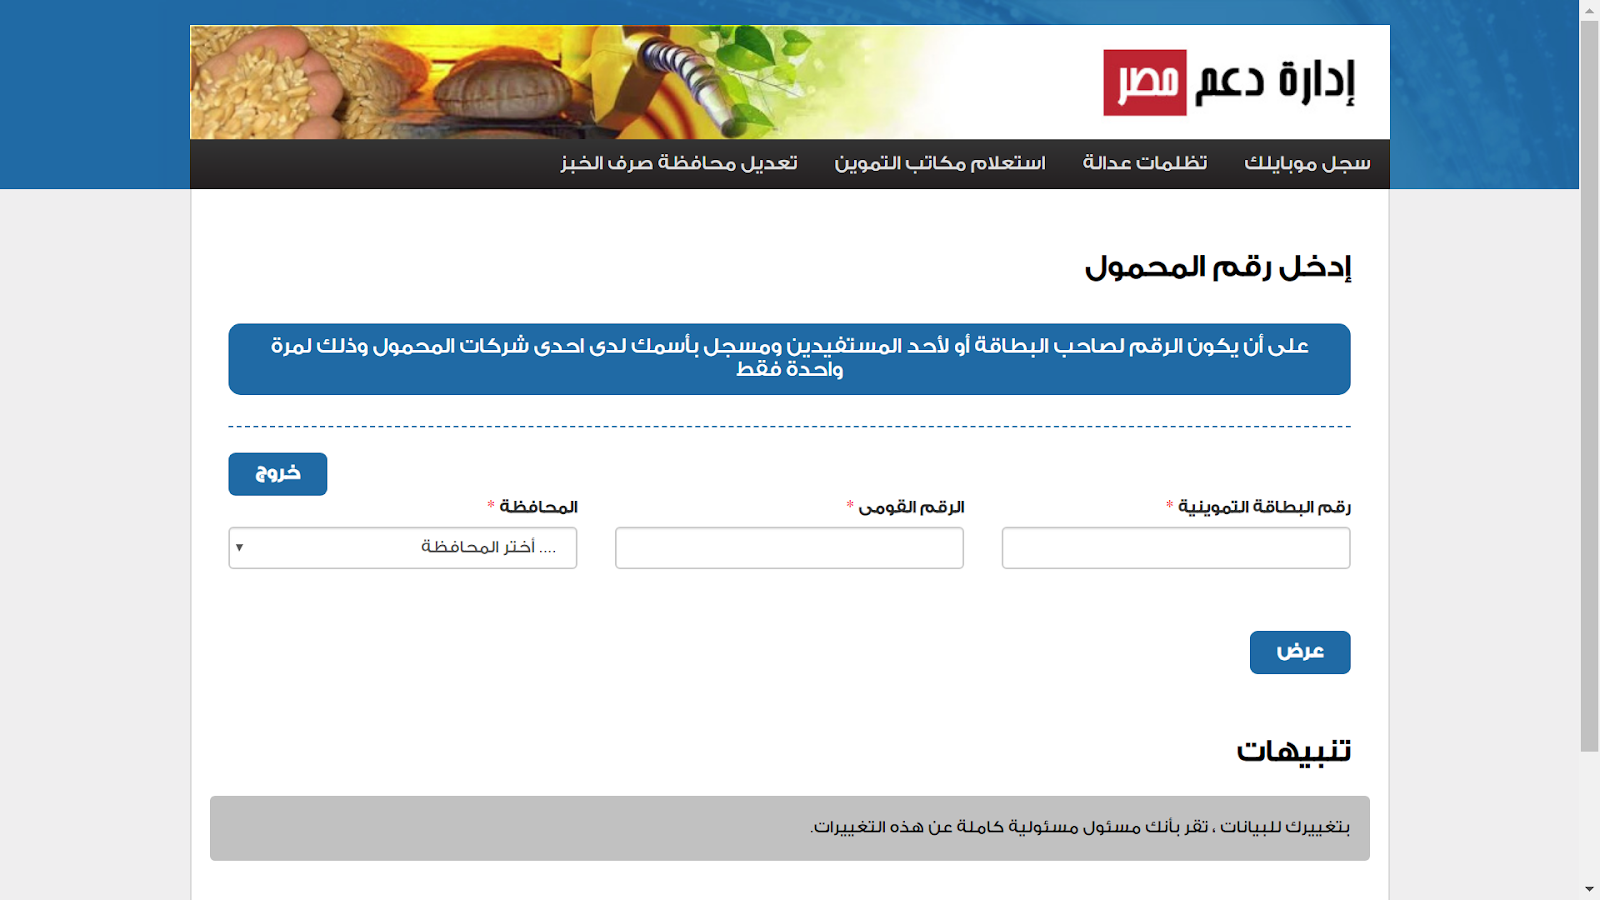 سجل فوراً عبر رابط موقع دعم مصر لتموين لإضافة أرقام الموبيل